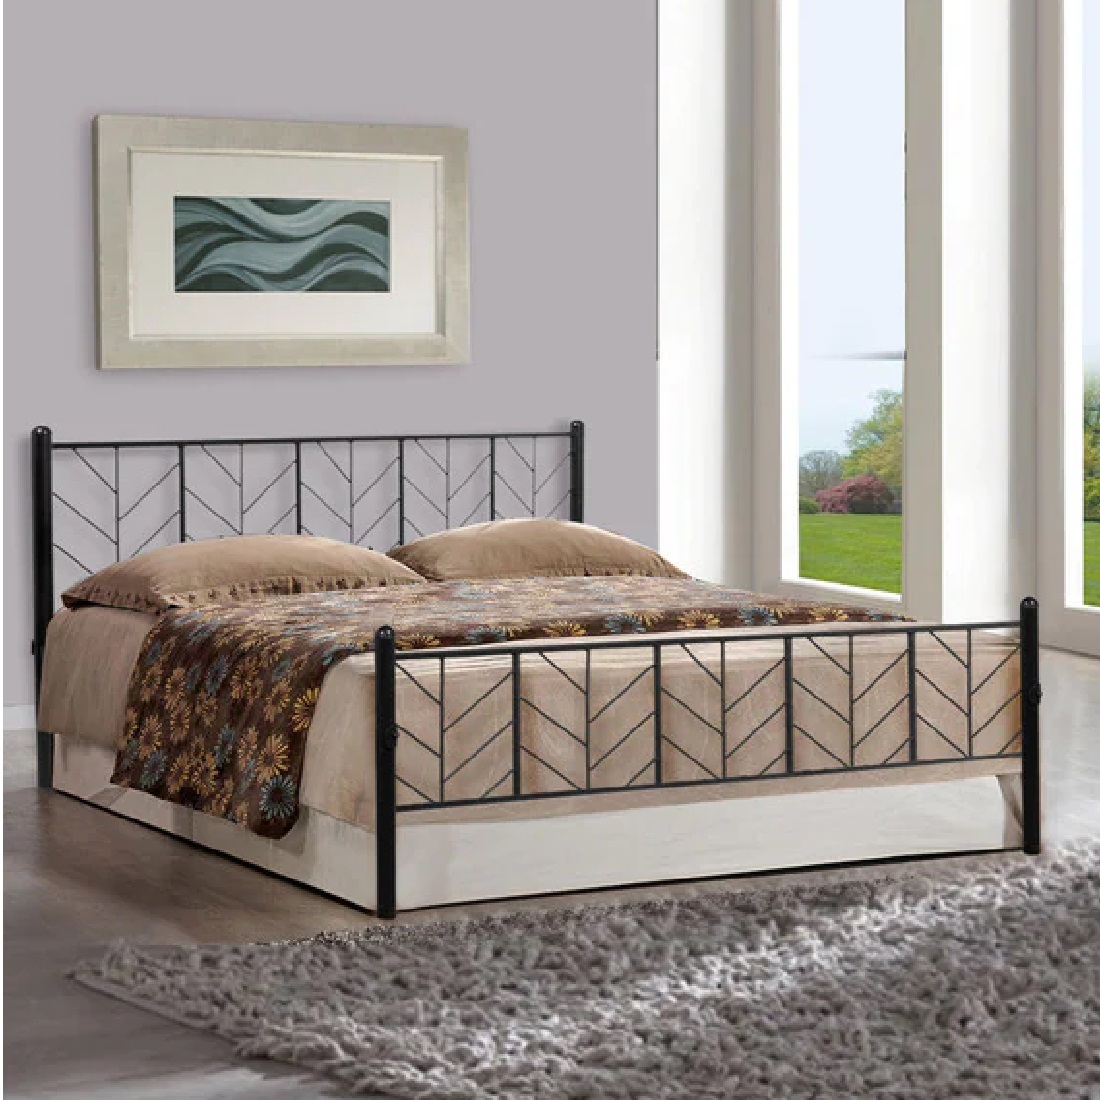 metal bed frame